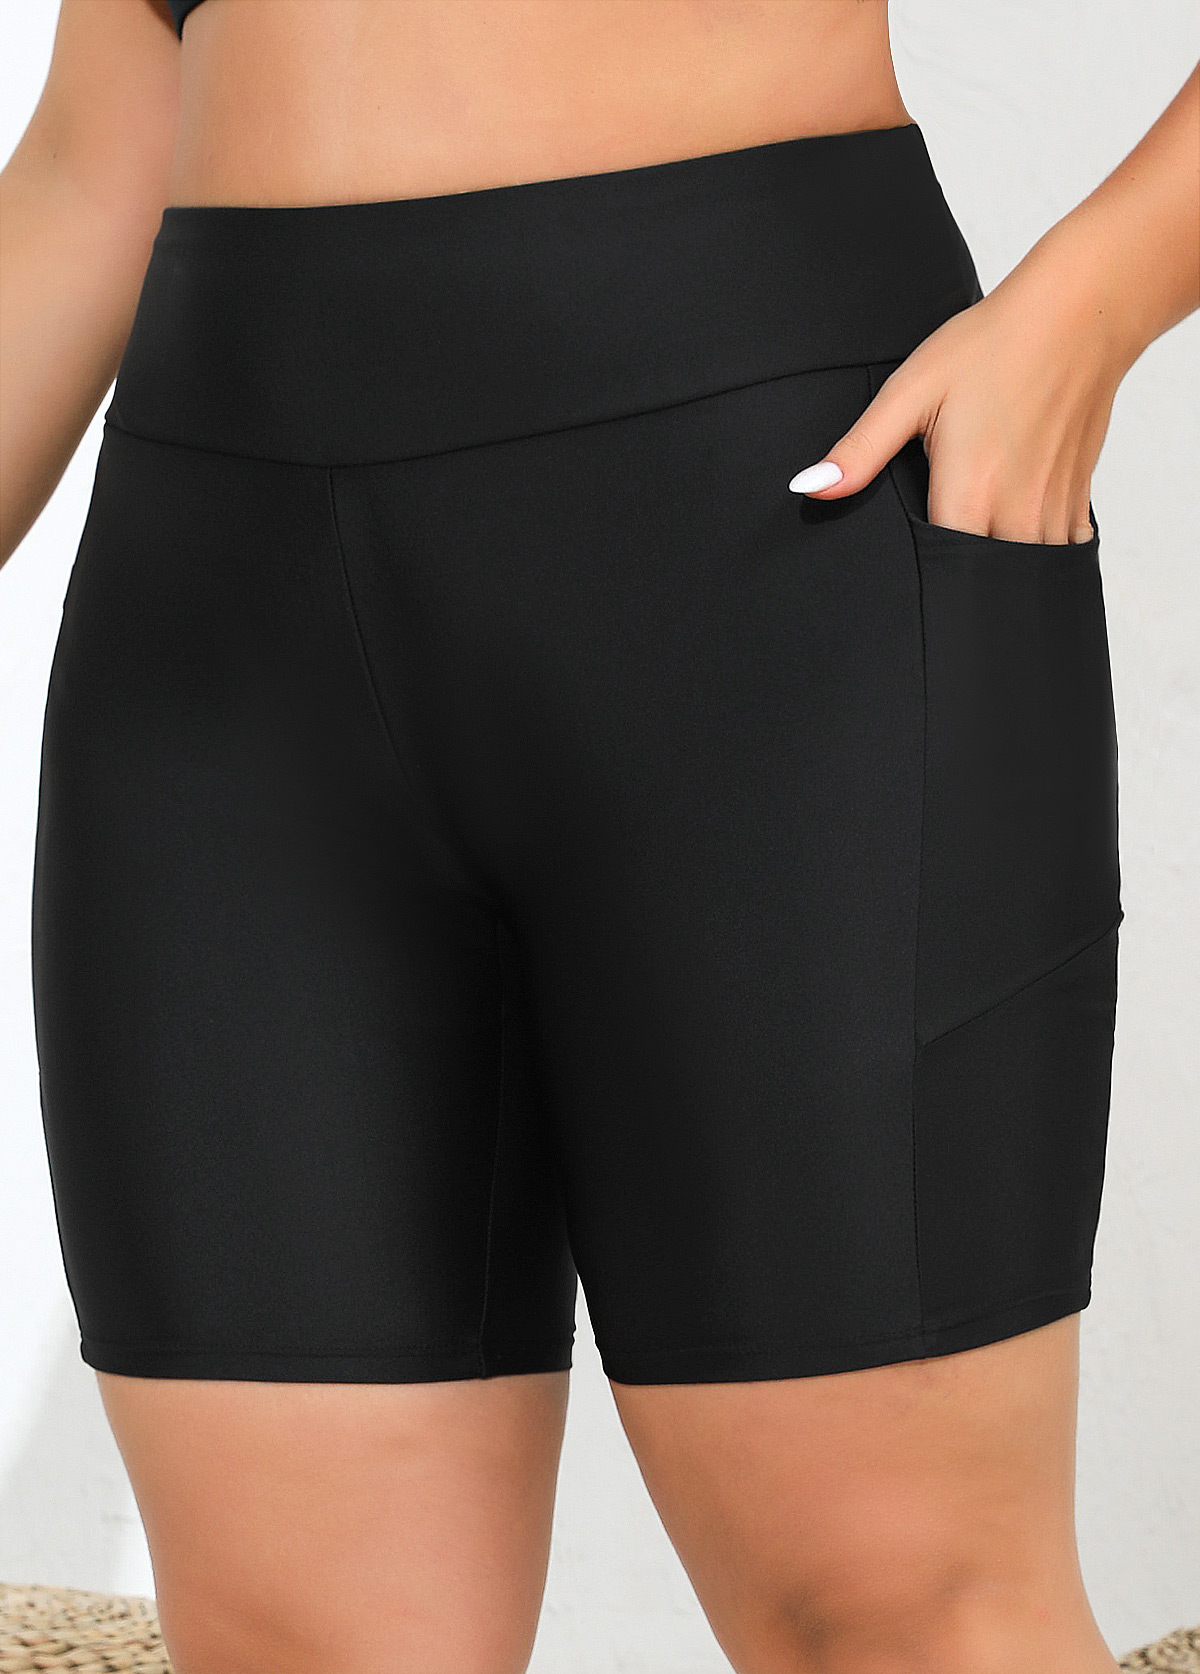 Pocket Plus Size High Waisted Black Skinny Swim Shorts